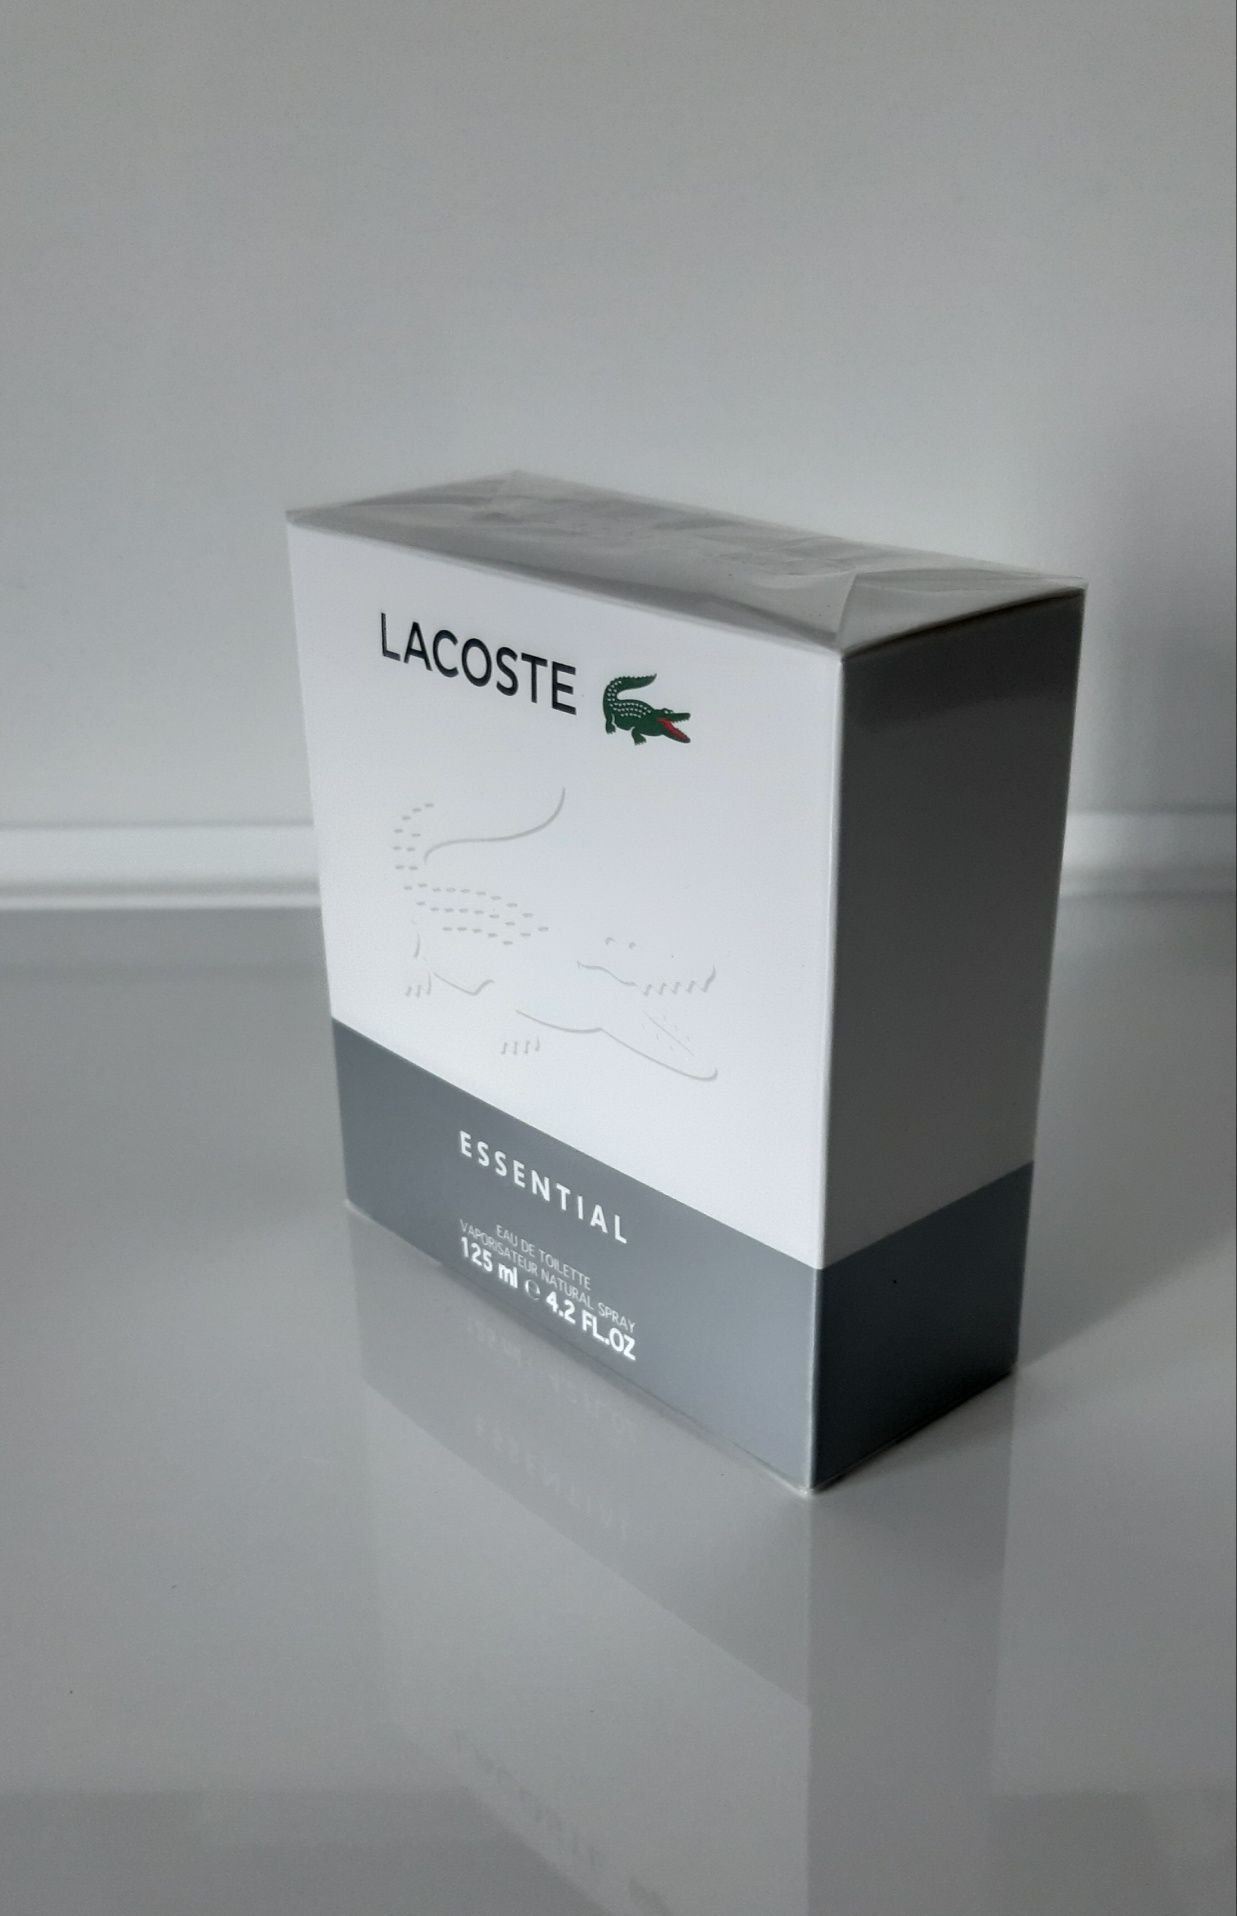 (Oryginał) Lacoste Essential 125ml (Możliwy Odbiór osobisty)